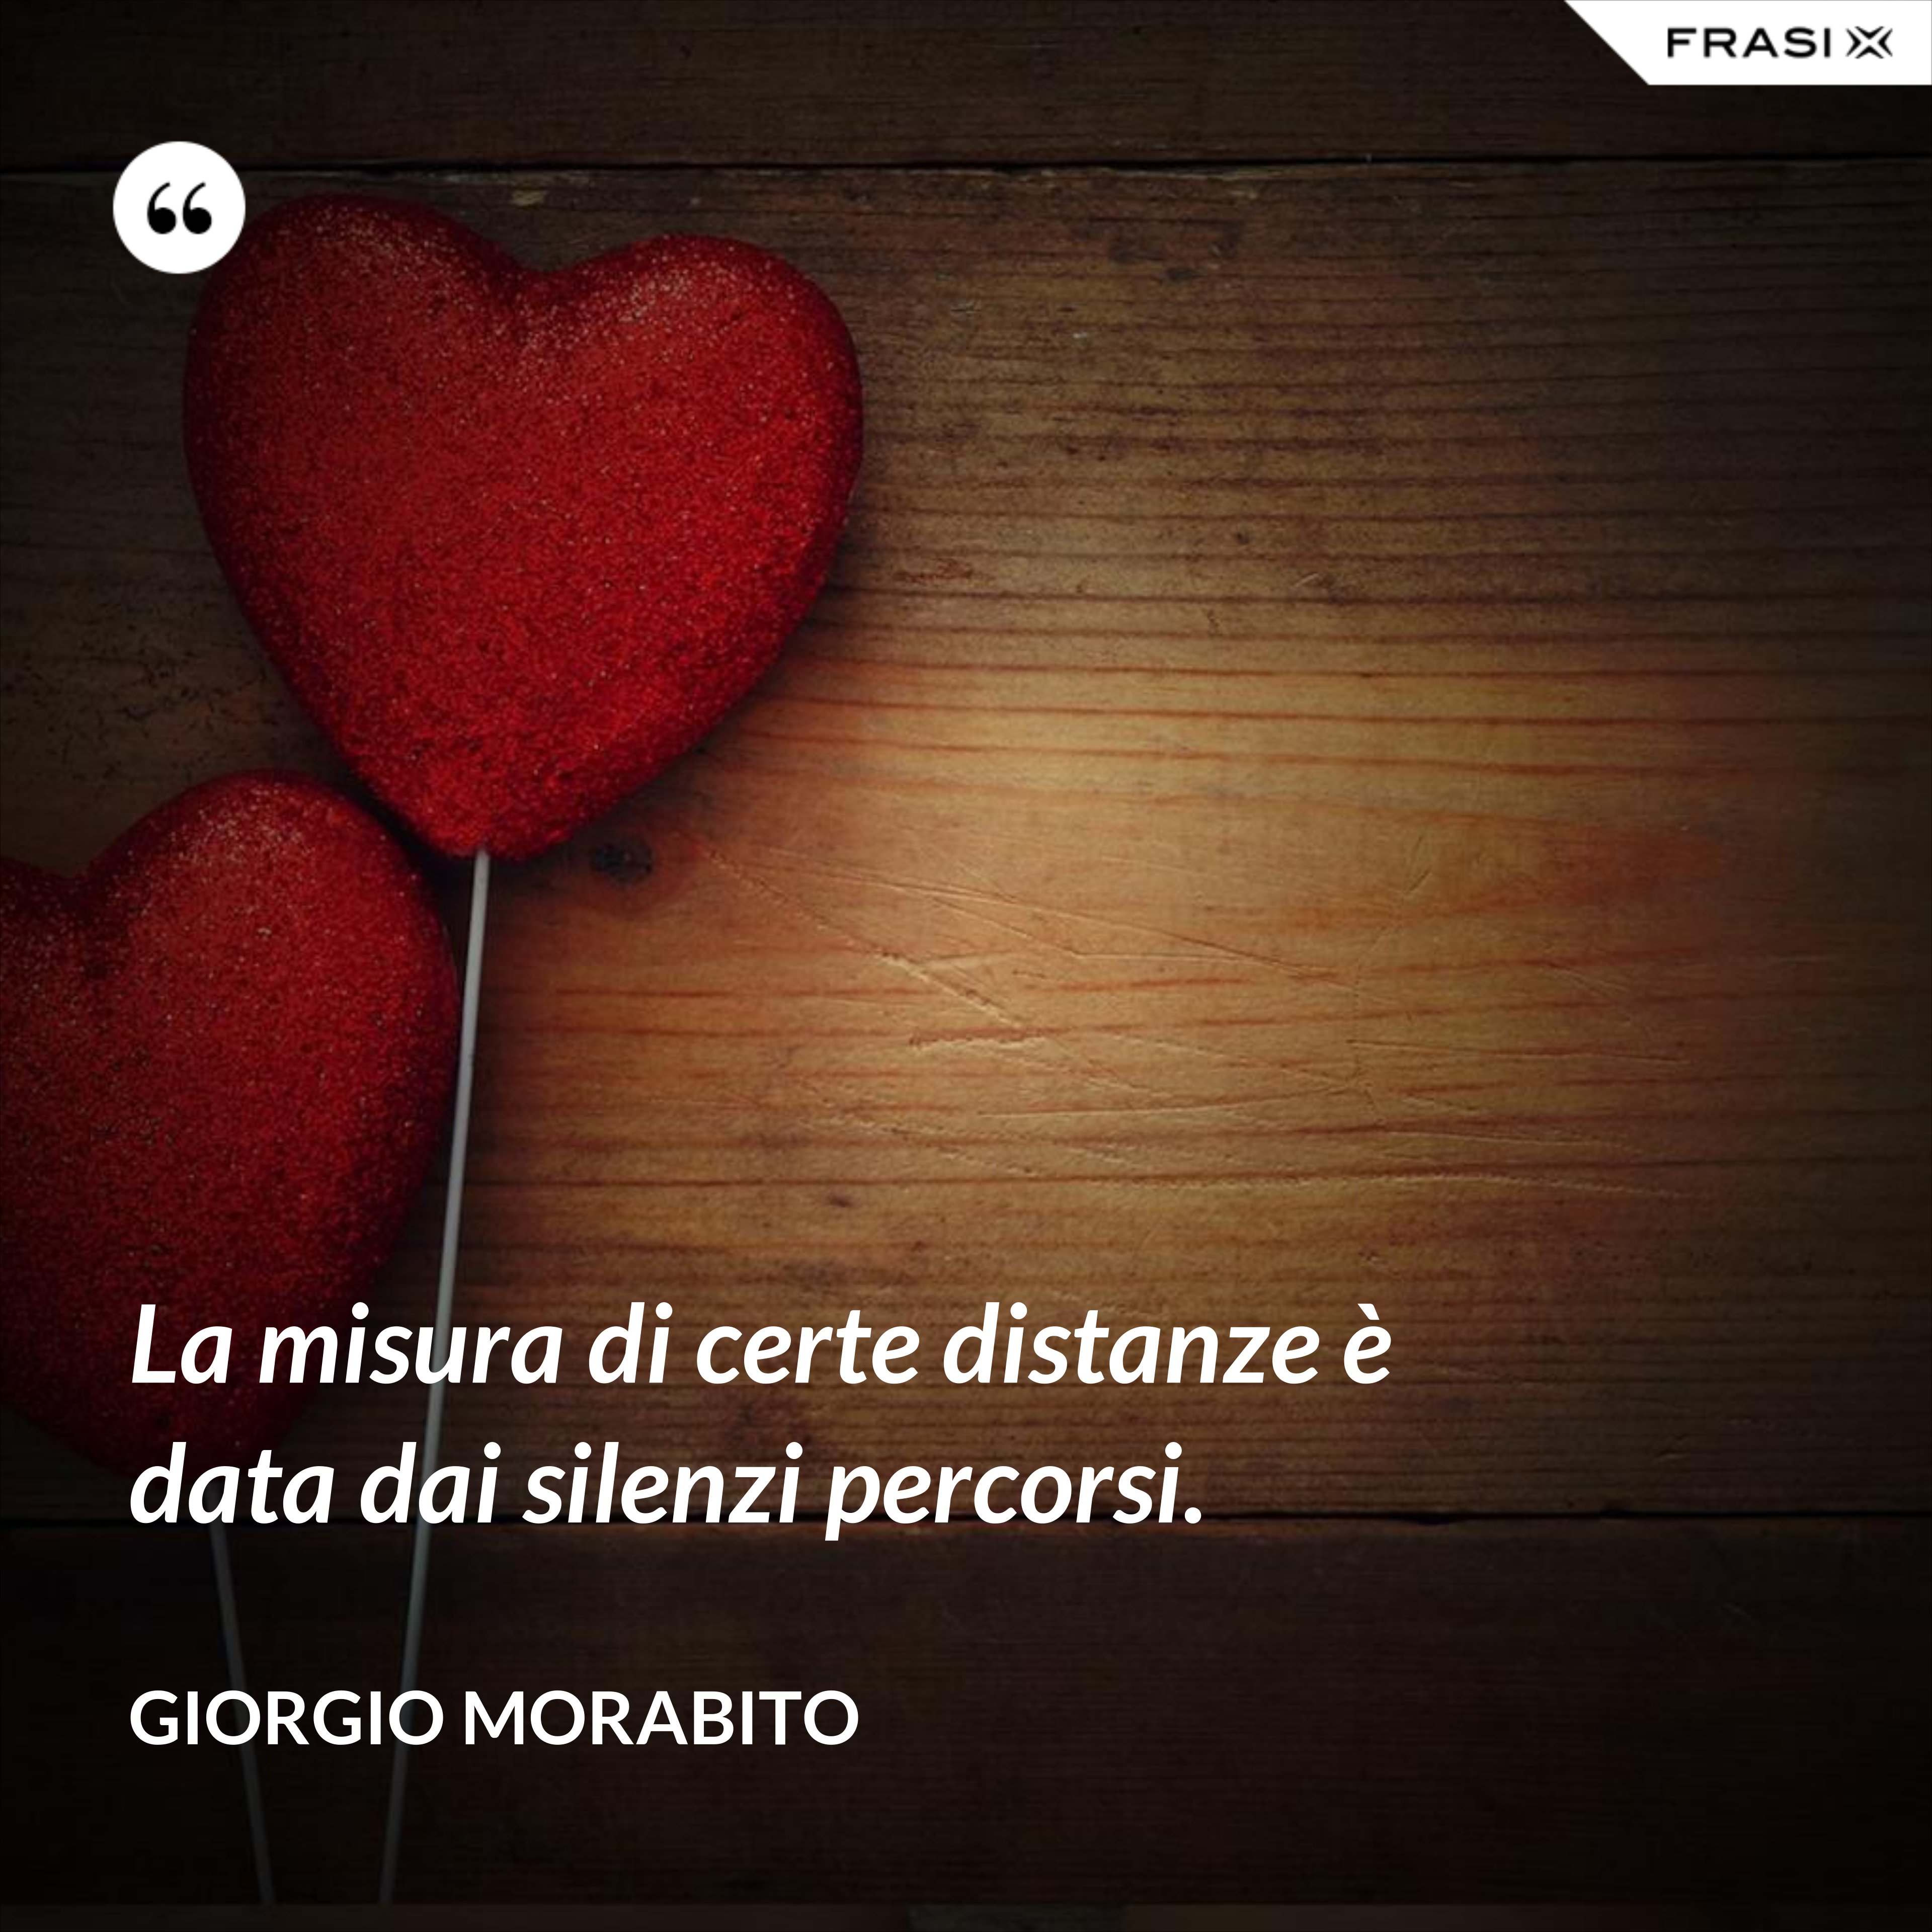 La misura di certe distanze è data dai silenzi percorsi. - Giorgio Morabito